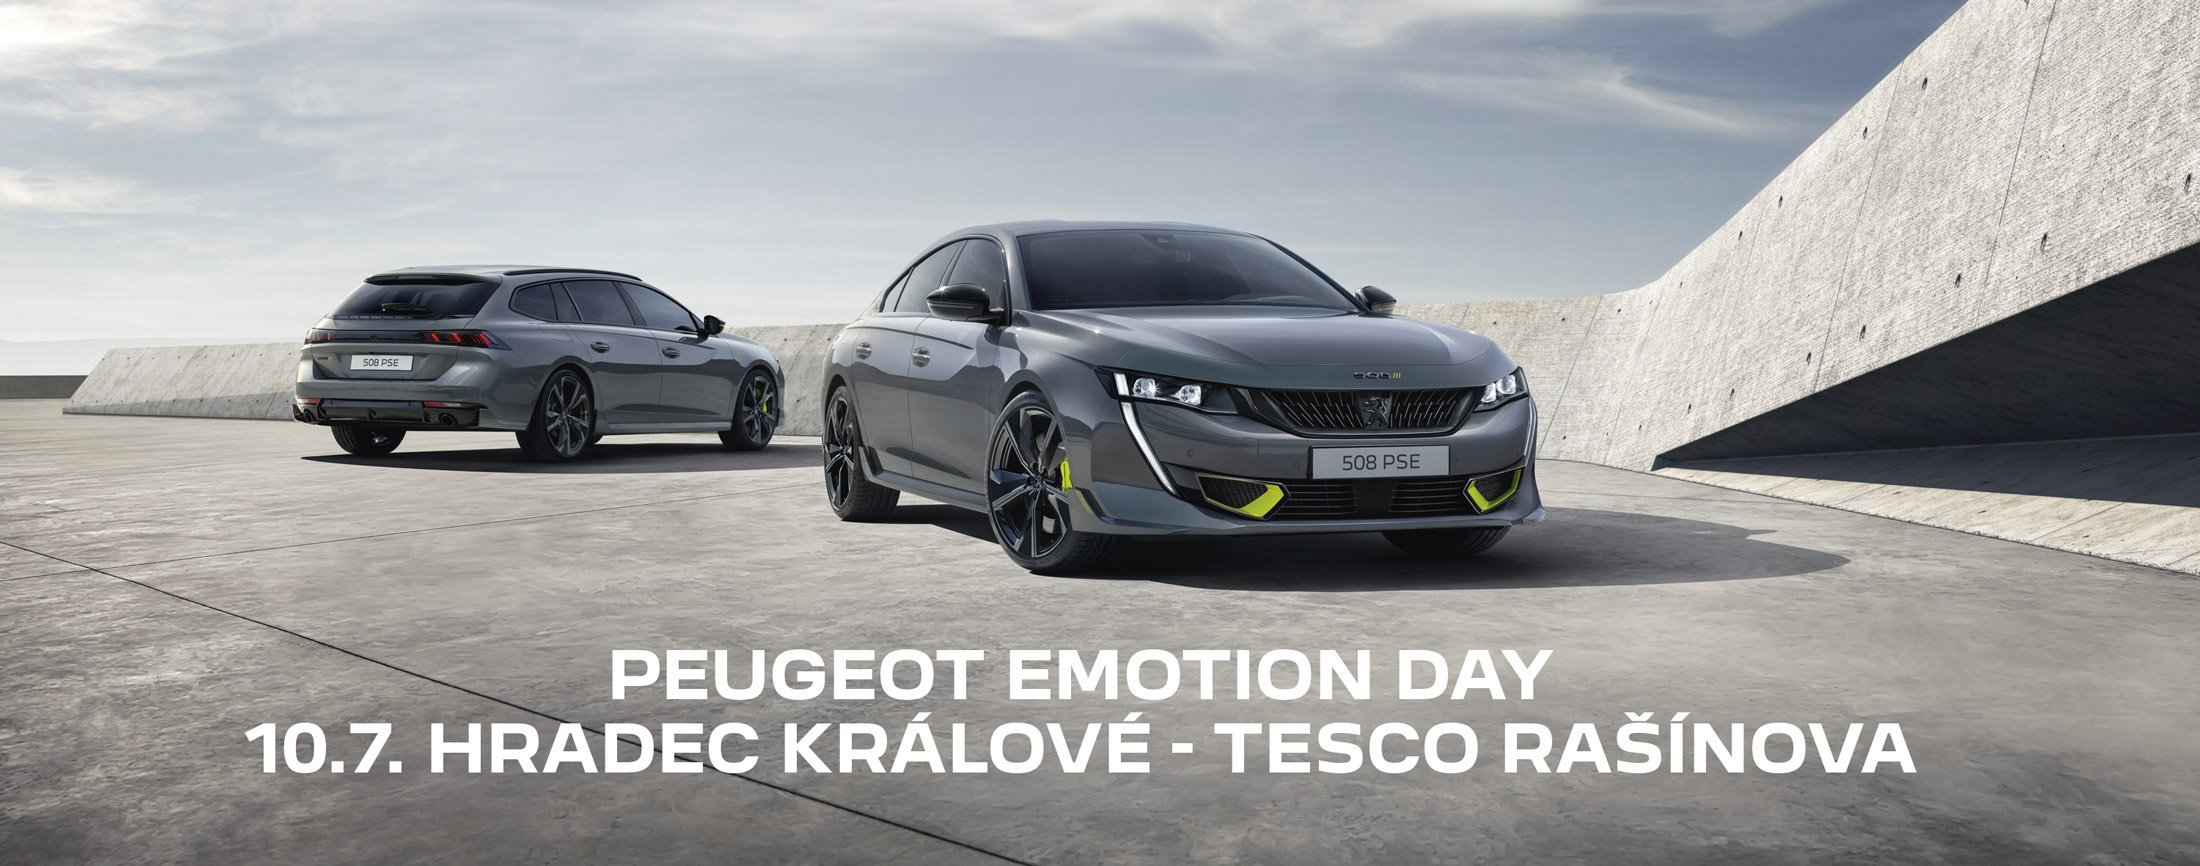 Peugeot Emotion day